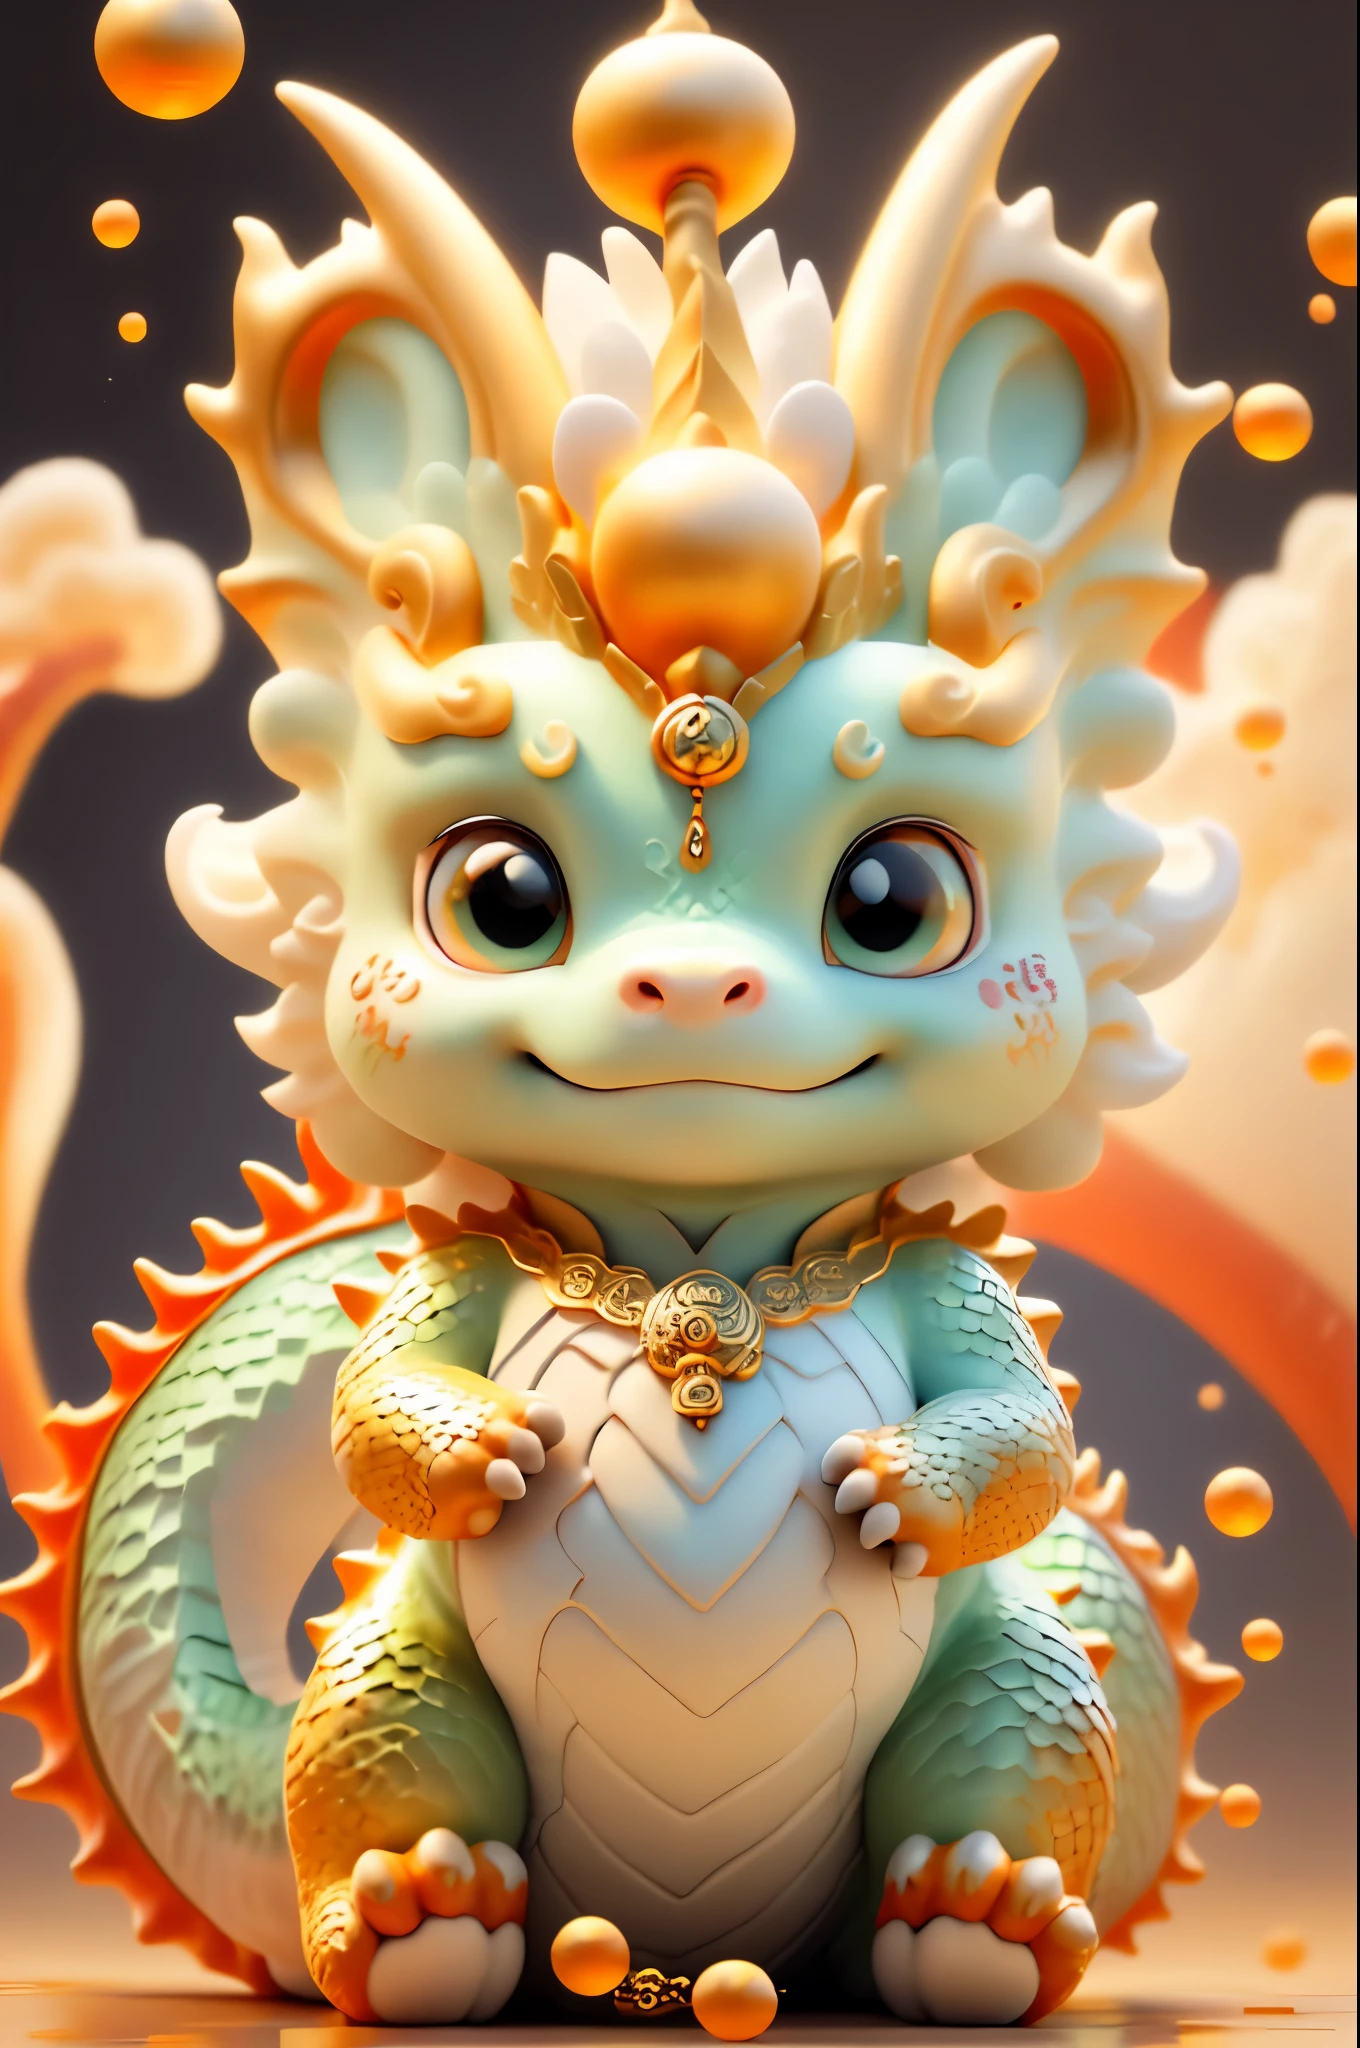 Dragon Chino，El fondo es casual.，La calidad de la imagen es delicada.，k hd，expresión muy amable，bebe dragon de agua